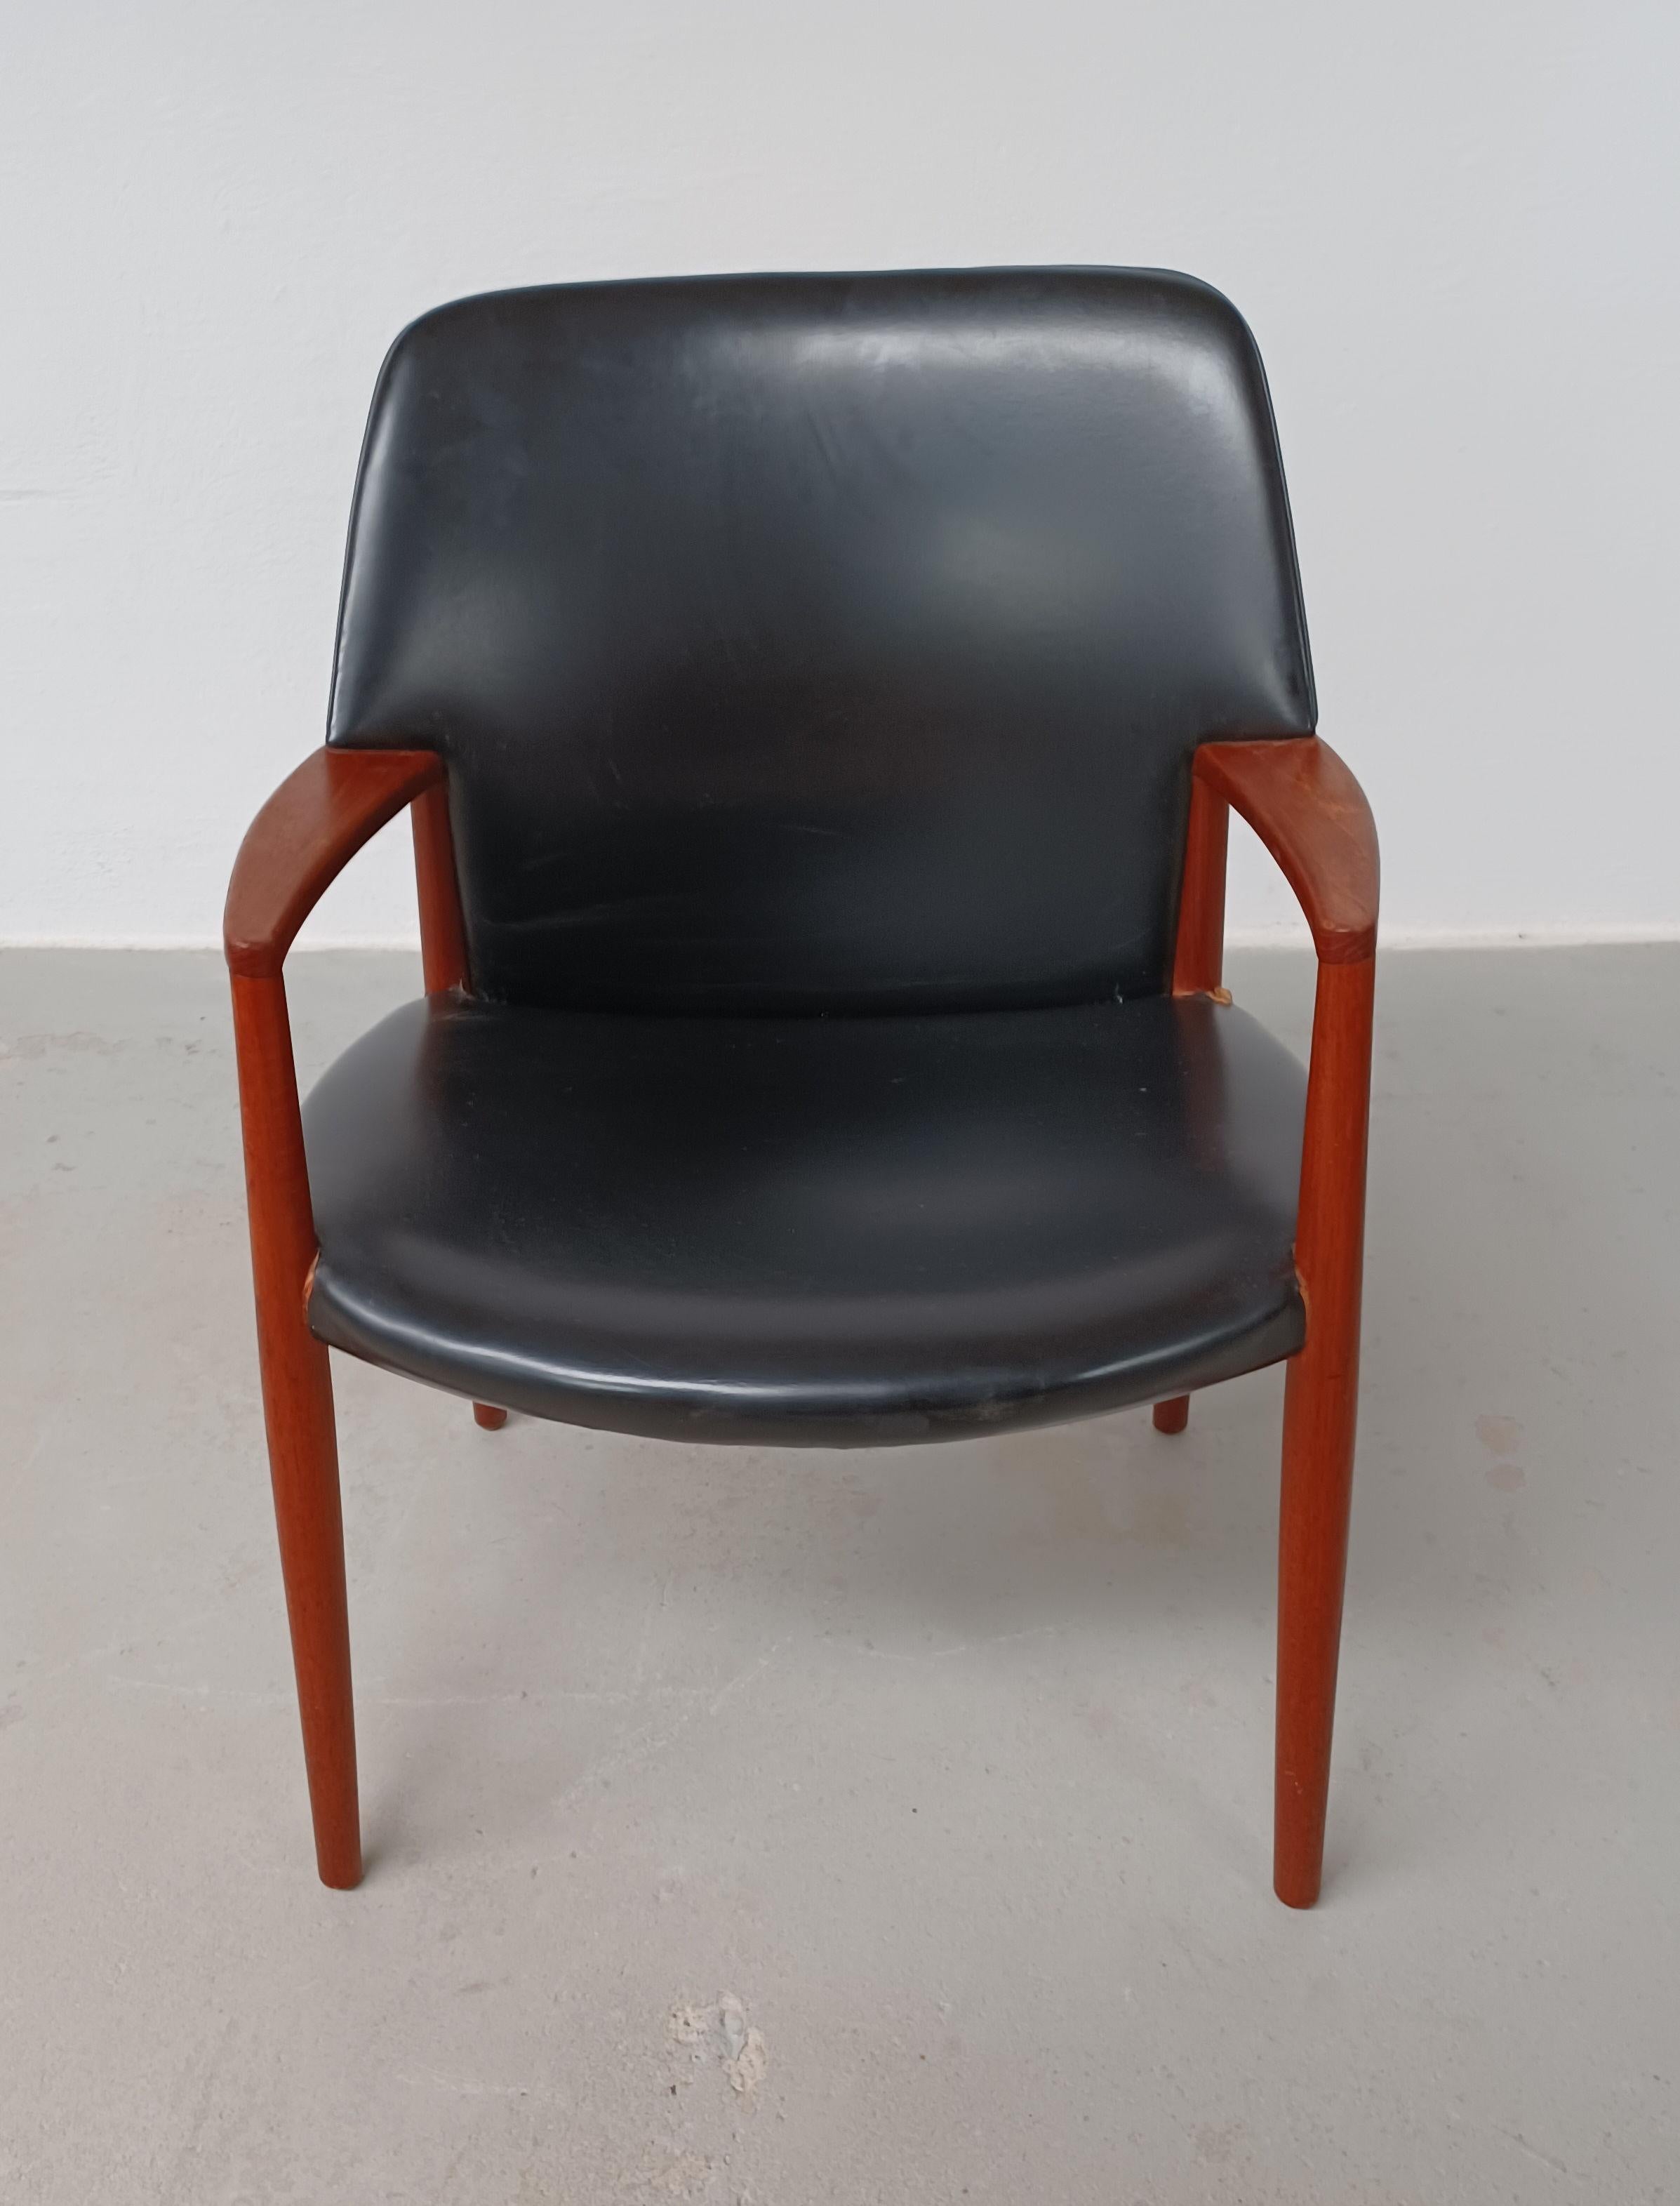 1950er Jahre Ejnar Larsen, Aksel Bender Madsen vollständig restaurierter, neu gepolsterter Sessel aus Teakholz.

Der Sessel ist mit seiner vollen Rückenlehne eine seltene Version von Aksel Bender Madsen & Ejnar Larsens Modell 4205, das 1955 für